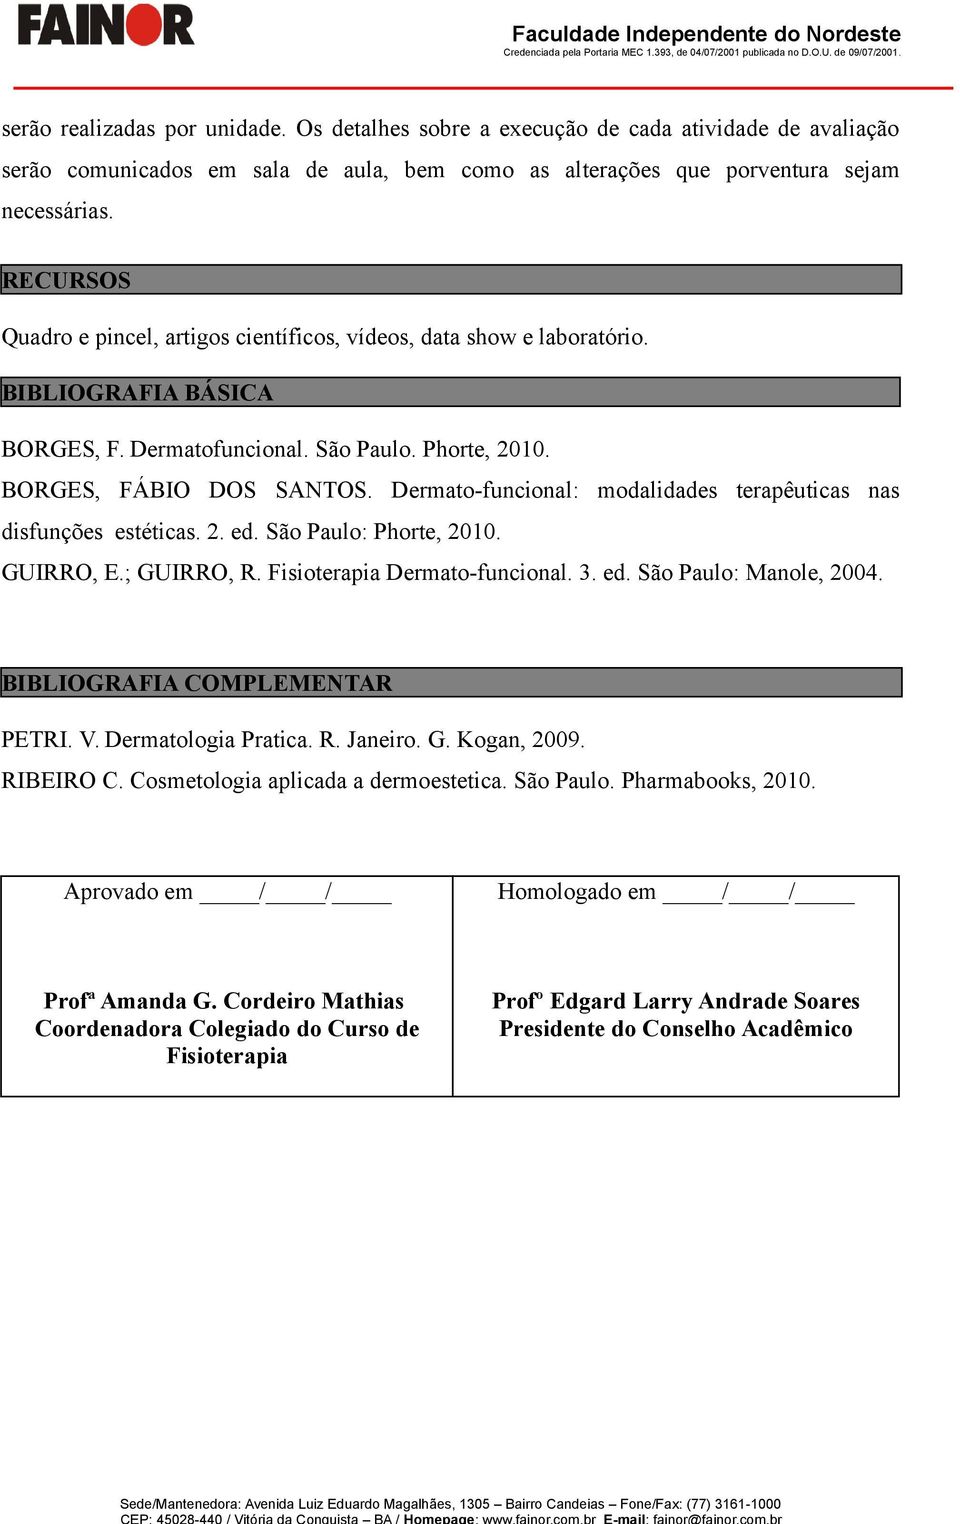 Dermato-funcional: modalidades terapêuticas nas disfunções estéticas. 2. ed. São Paulo: Phorte, 2010. GUIRRO, E.; GUIRRO, R. Fisioterapia Dermato-funcional. 3. ed. São Paulo: Manole, 2004.